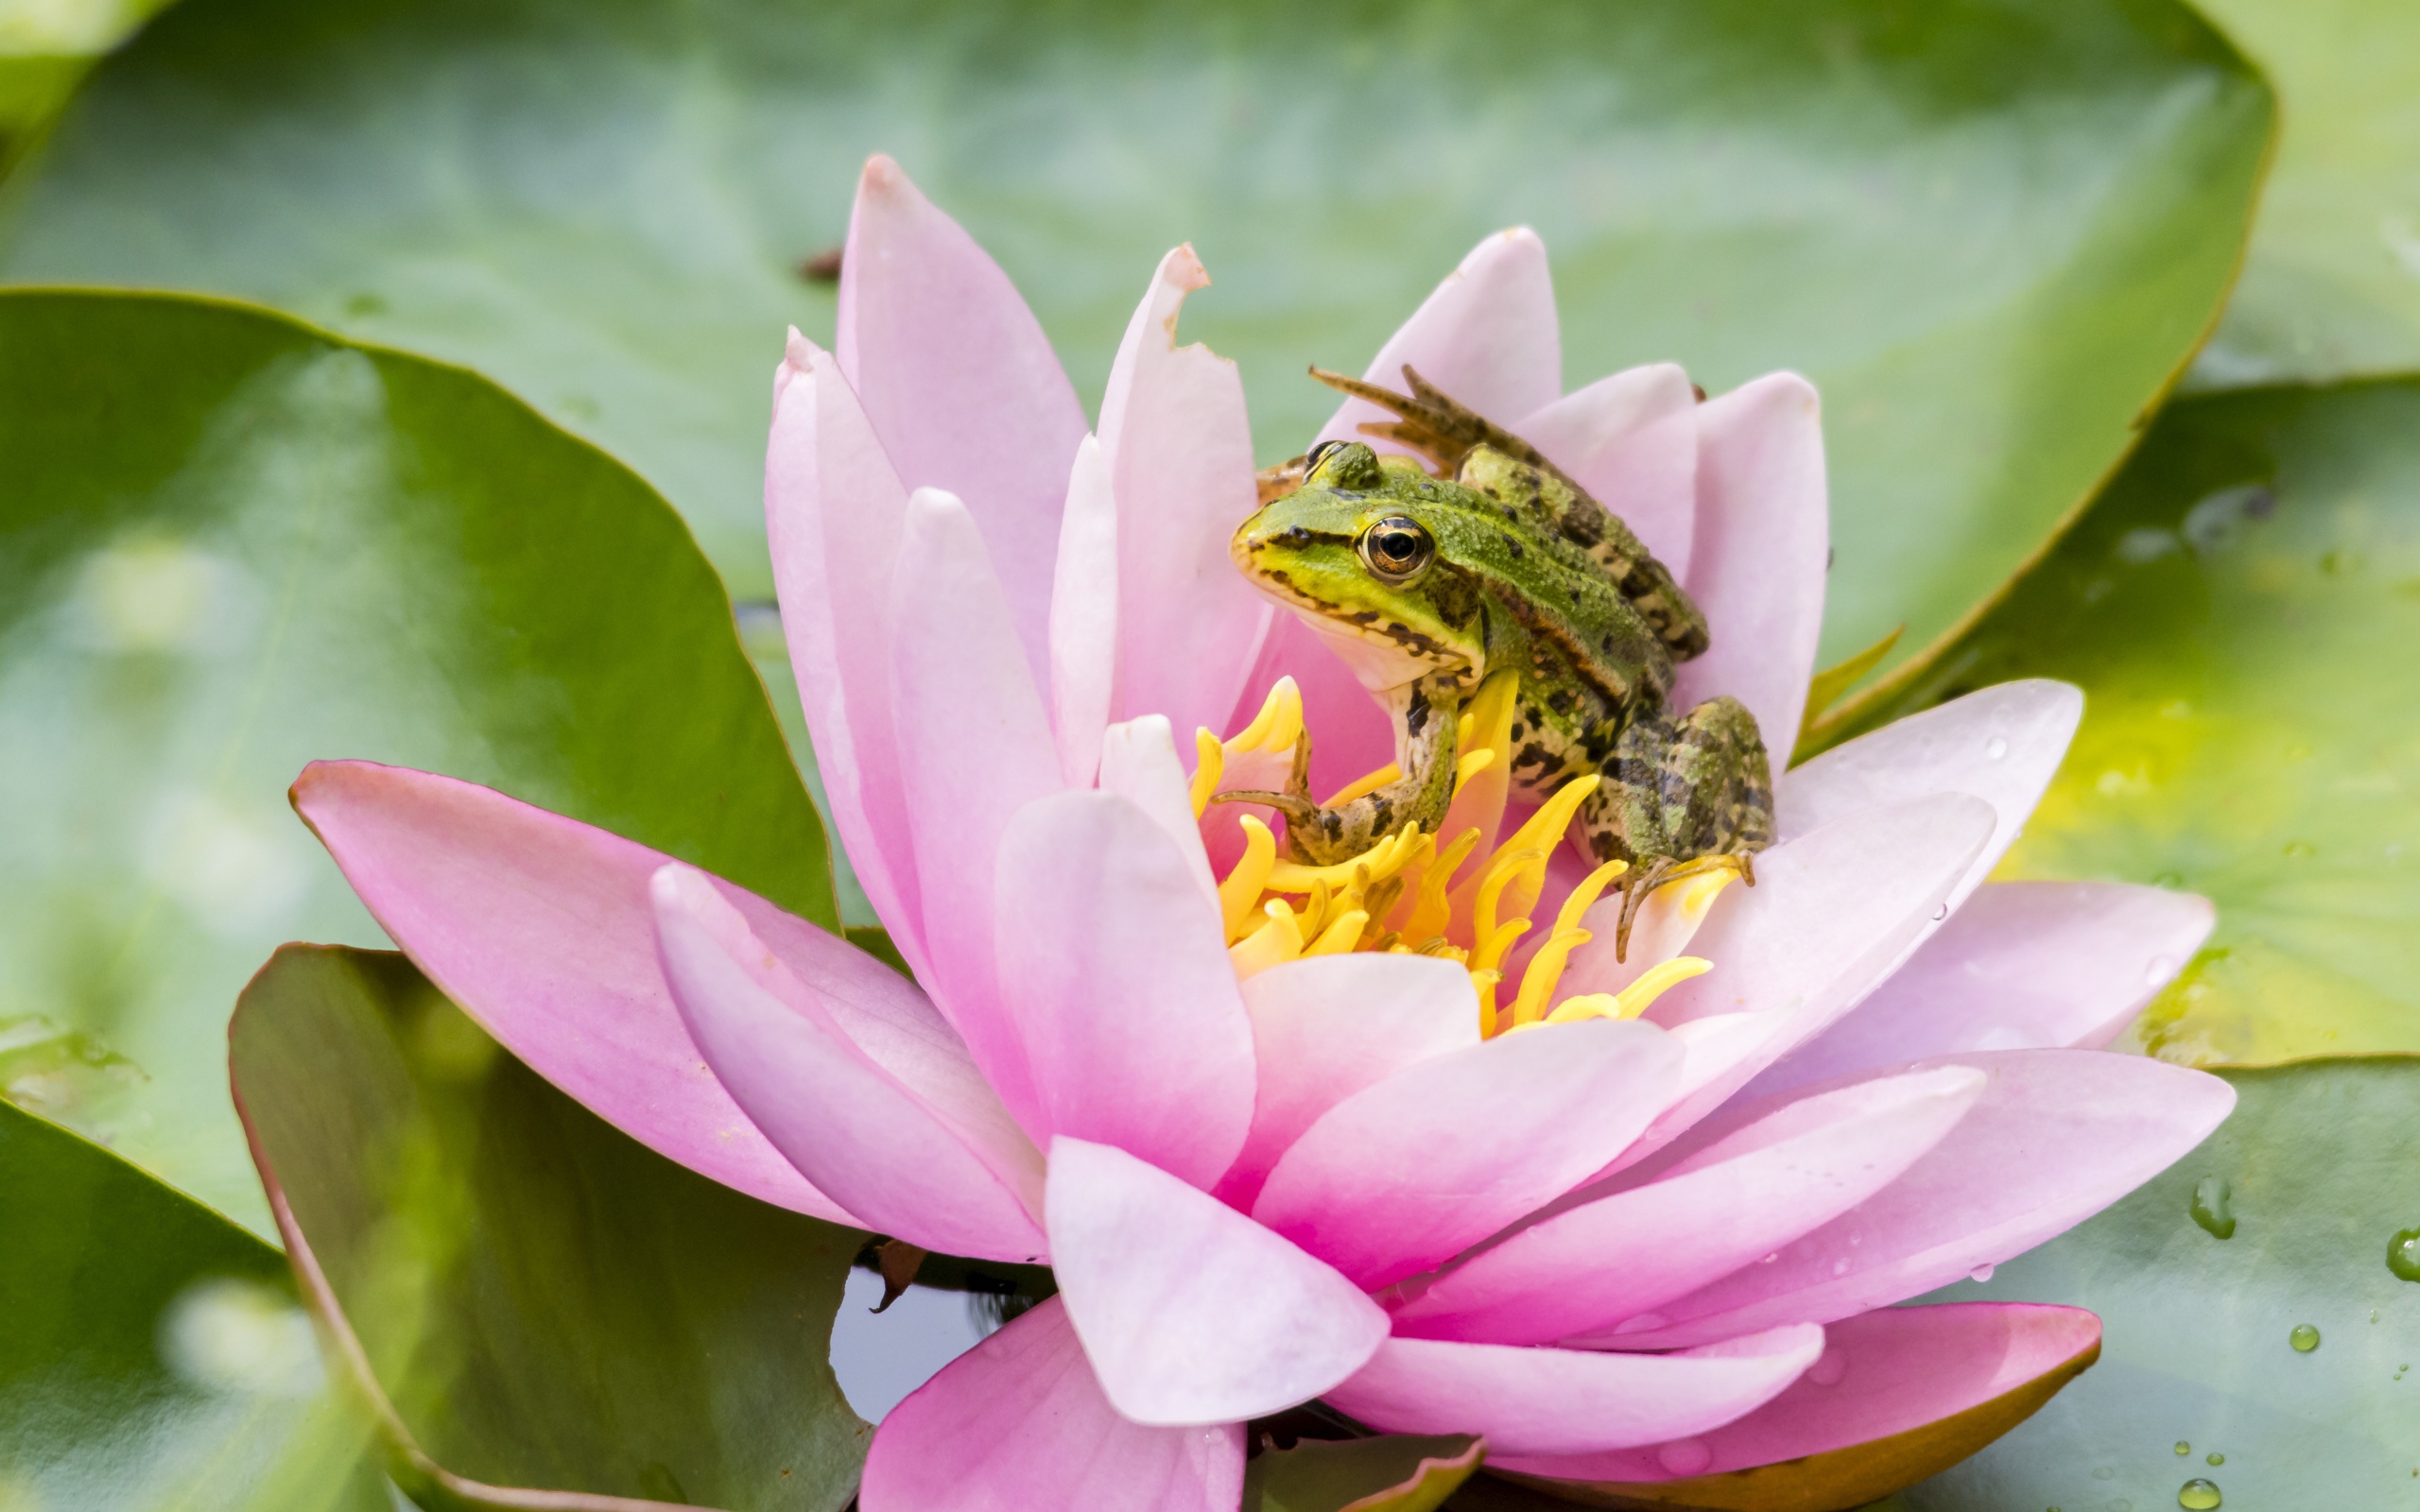 Маленькая зеленая лягушка сидит на розовом цветке лотоса 